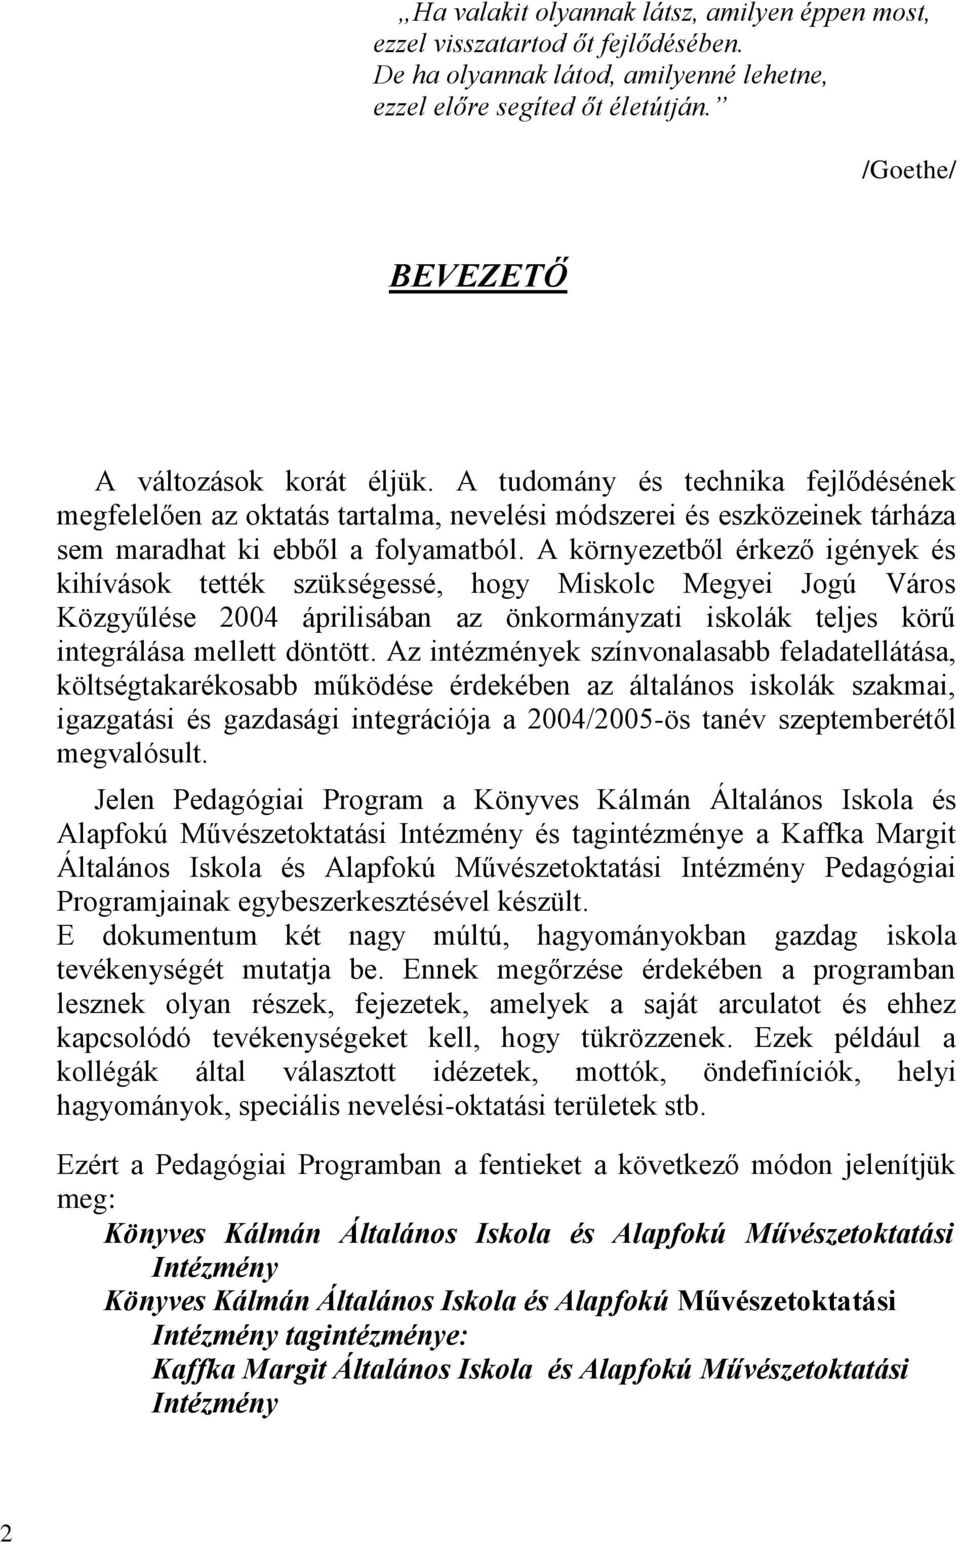 A környezetből érkező igények és kihívások tették szükségessé, hogy Miskolc Megyei Jogú Város Közgyűlése 2004 áprilisában az önkormányzati iskolák teljes körű integrálása mellett döntött.